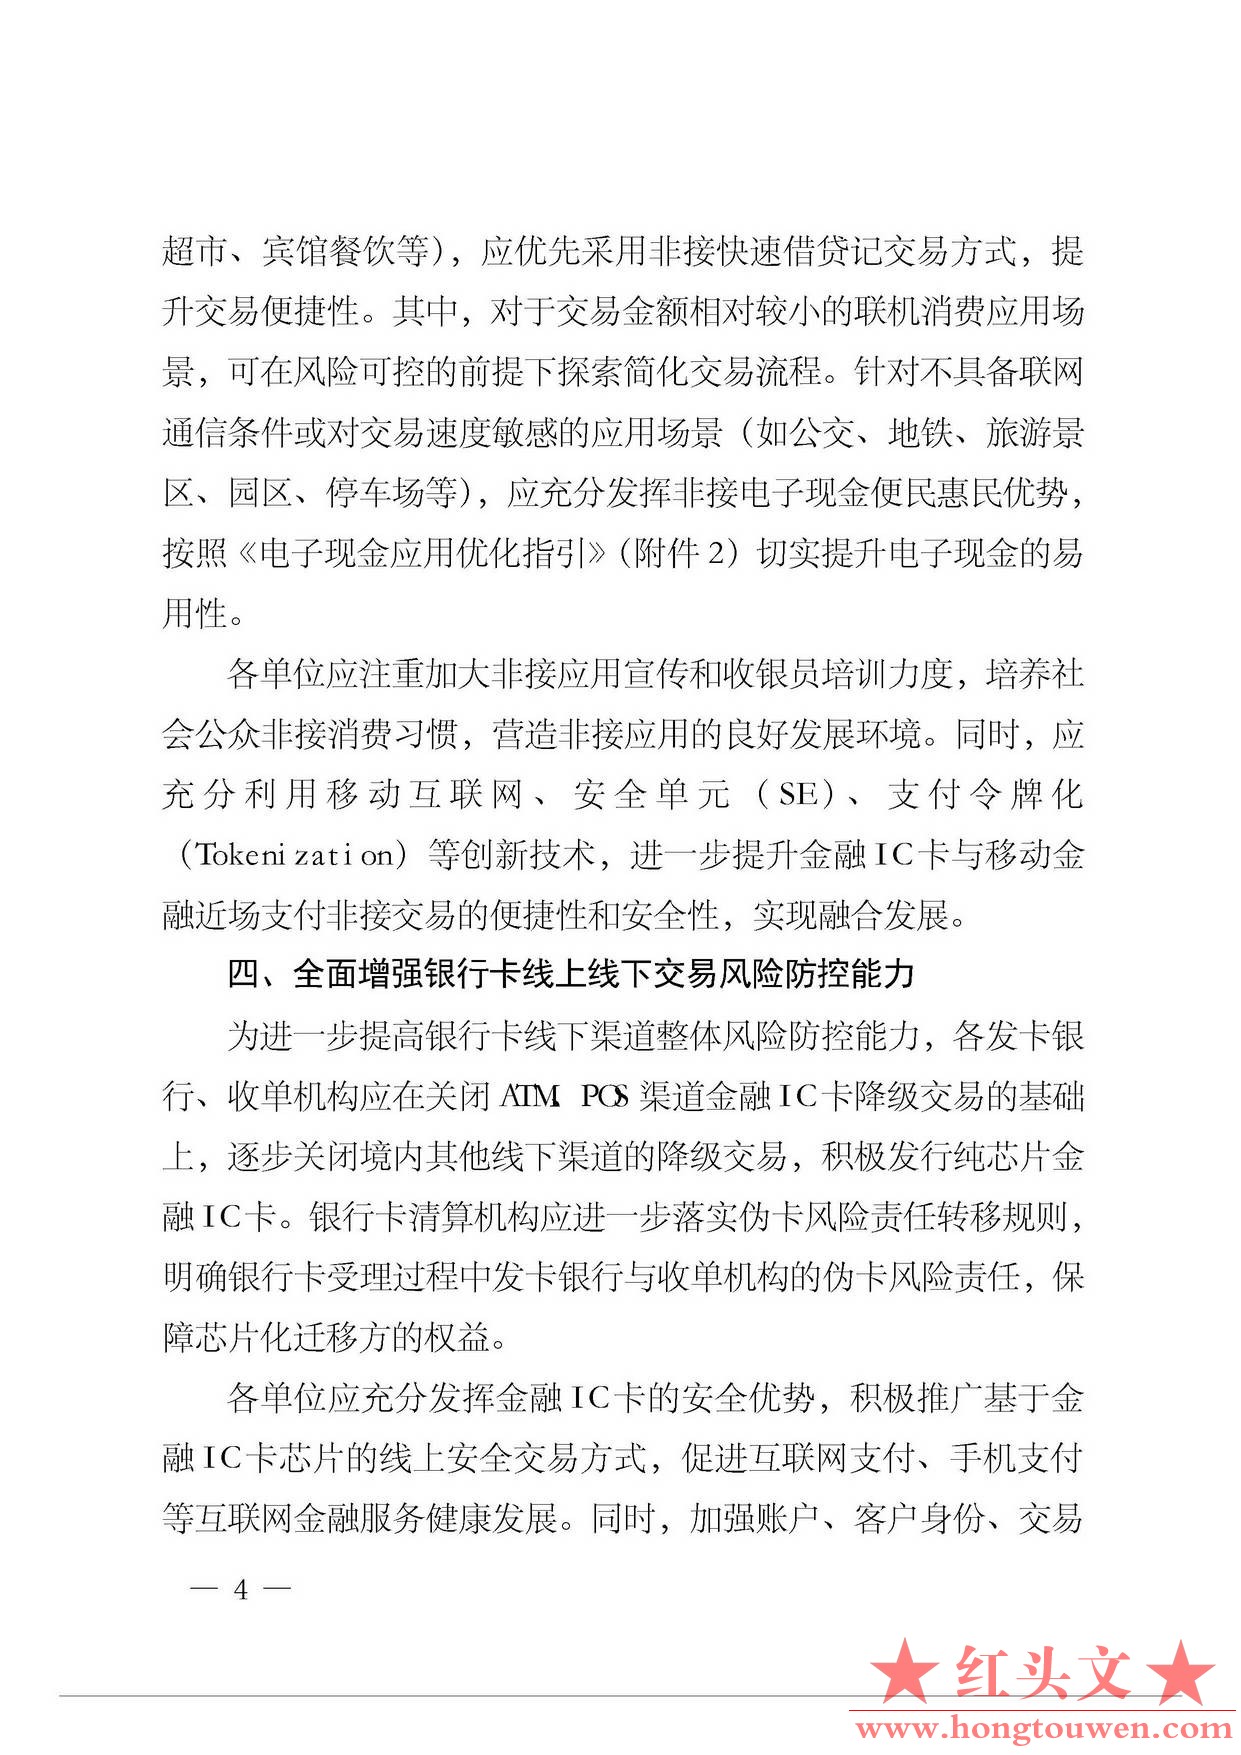 银办发[2015]222号--中国人民银行办公厅关于进一步做好金融IC卡和移动金融应用工作的.jpg